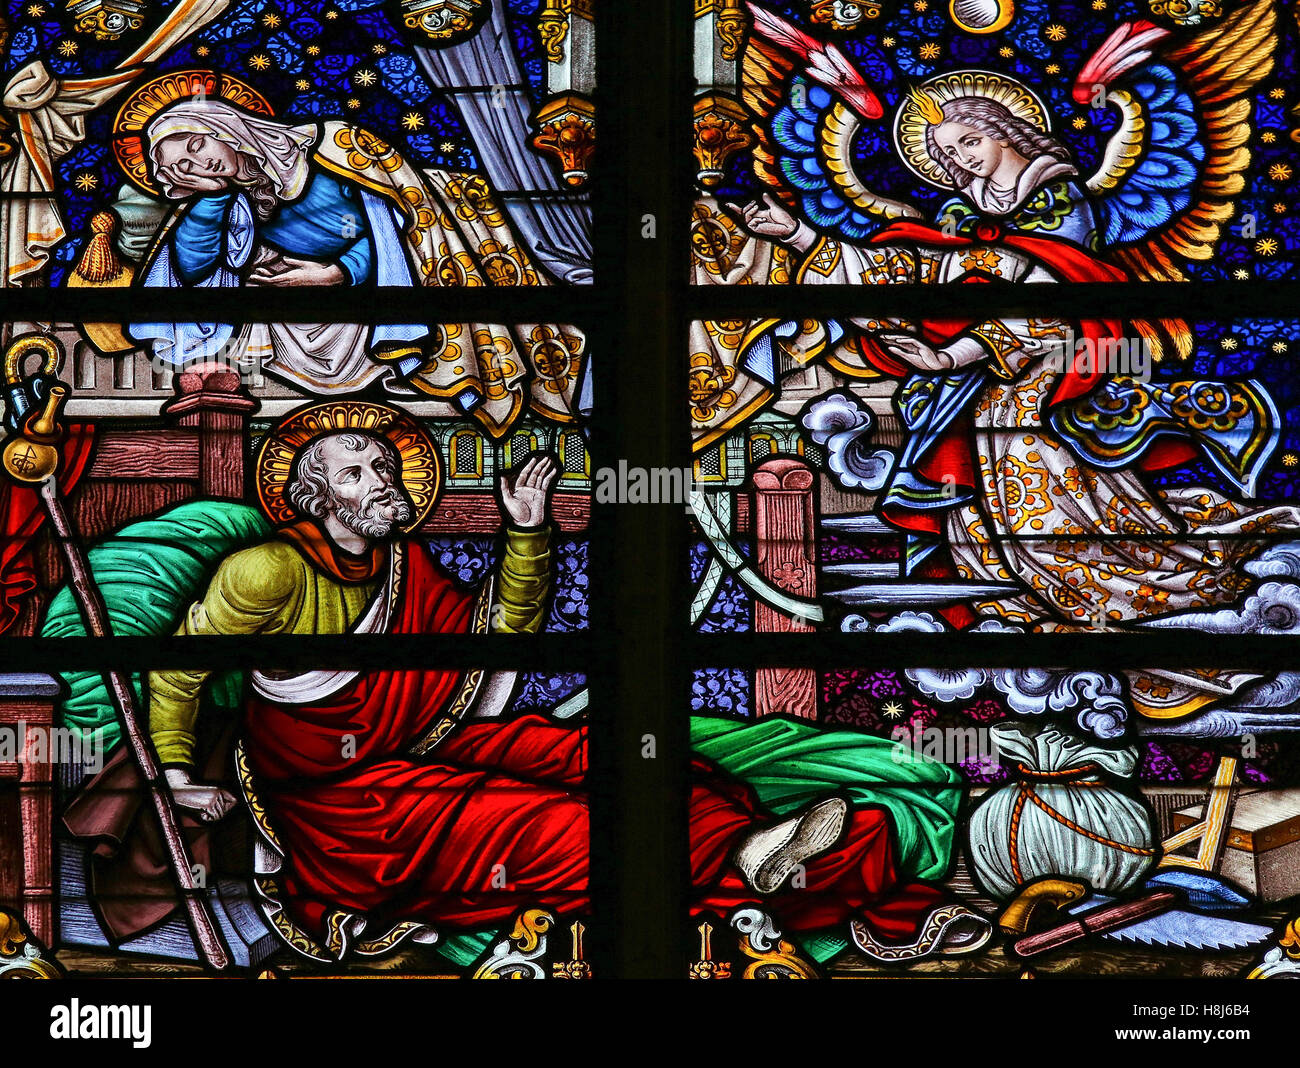 Glasmalerei-Fenster Darstellung der Traum von Saint Joseph in der Kathedrale von Saint-Rumboldt in Mechelen, Belgien. Stockfoto